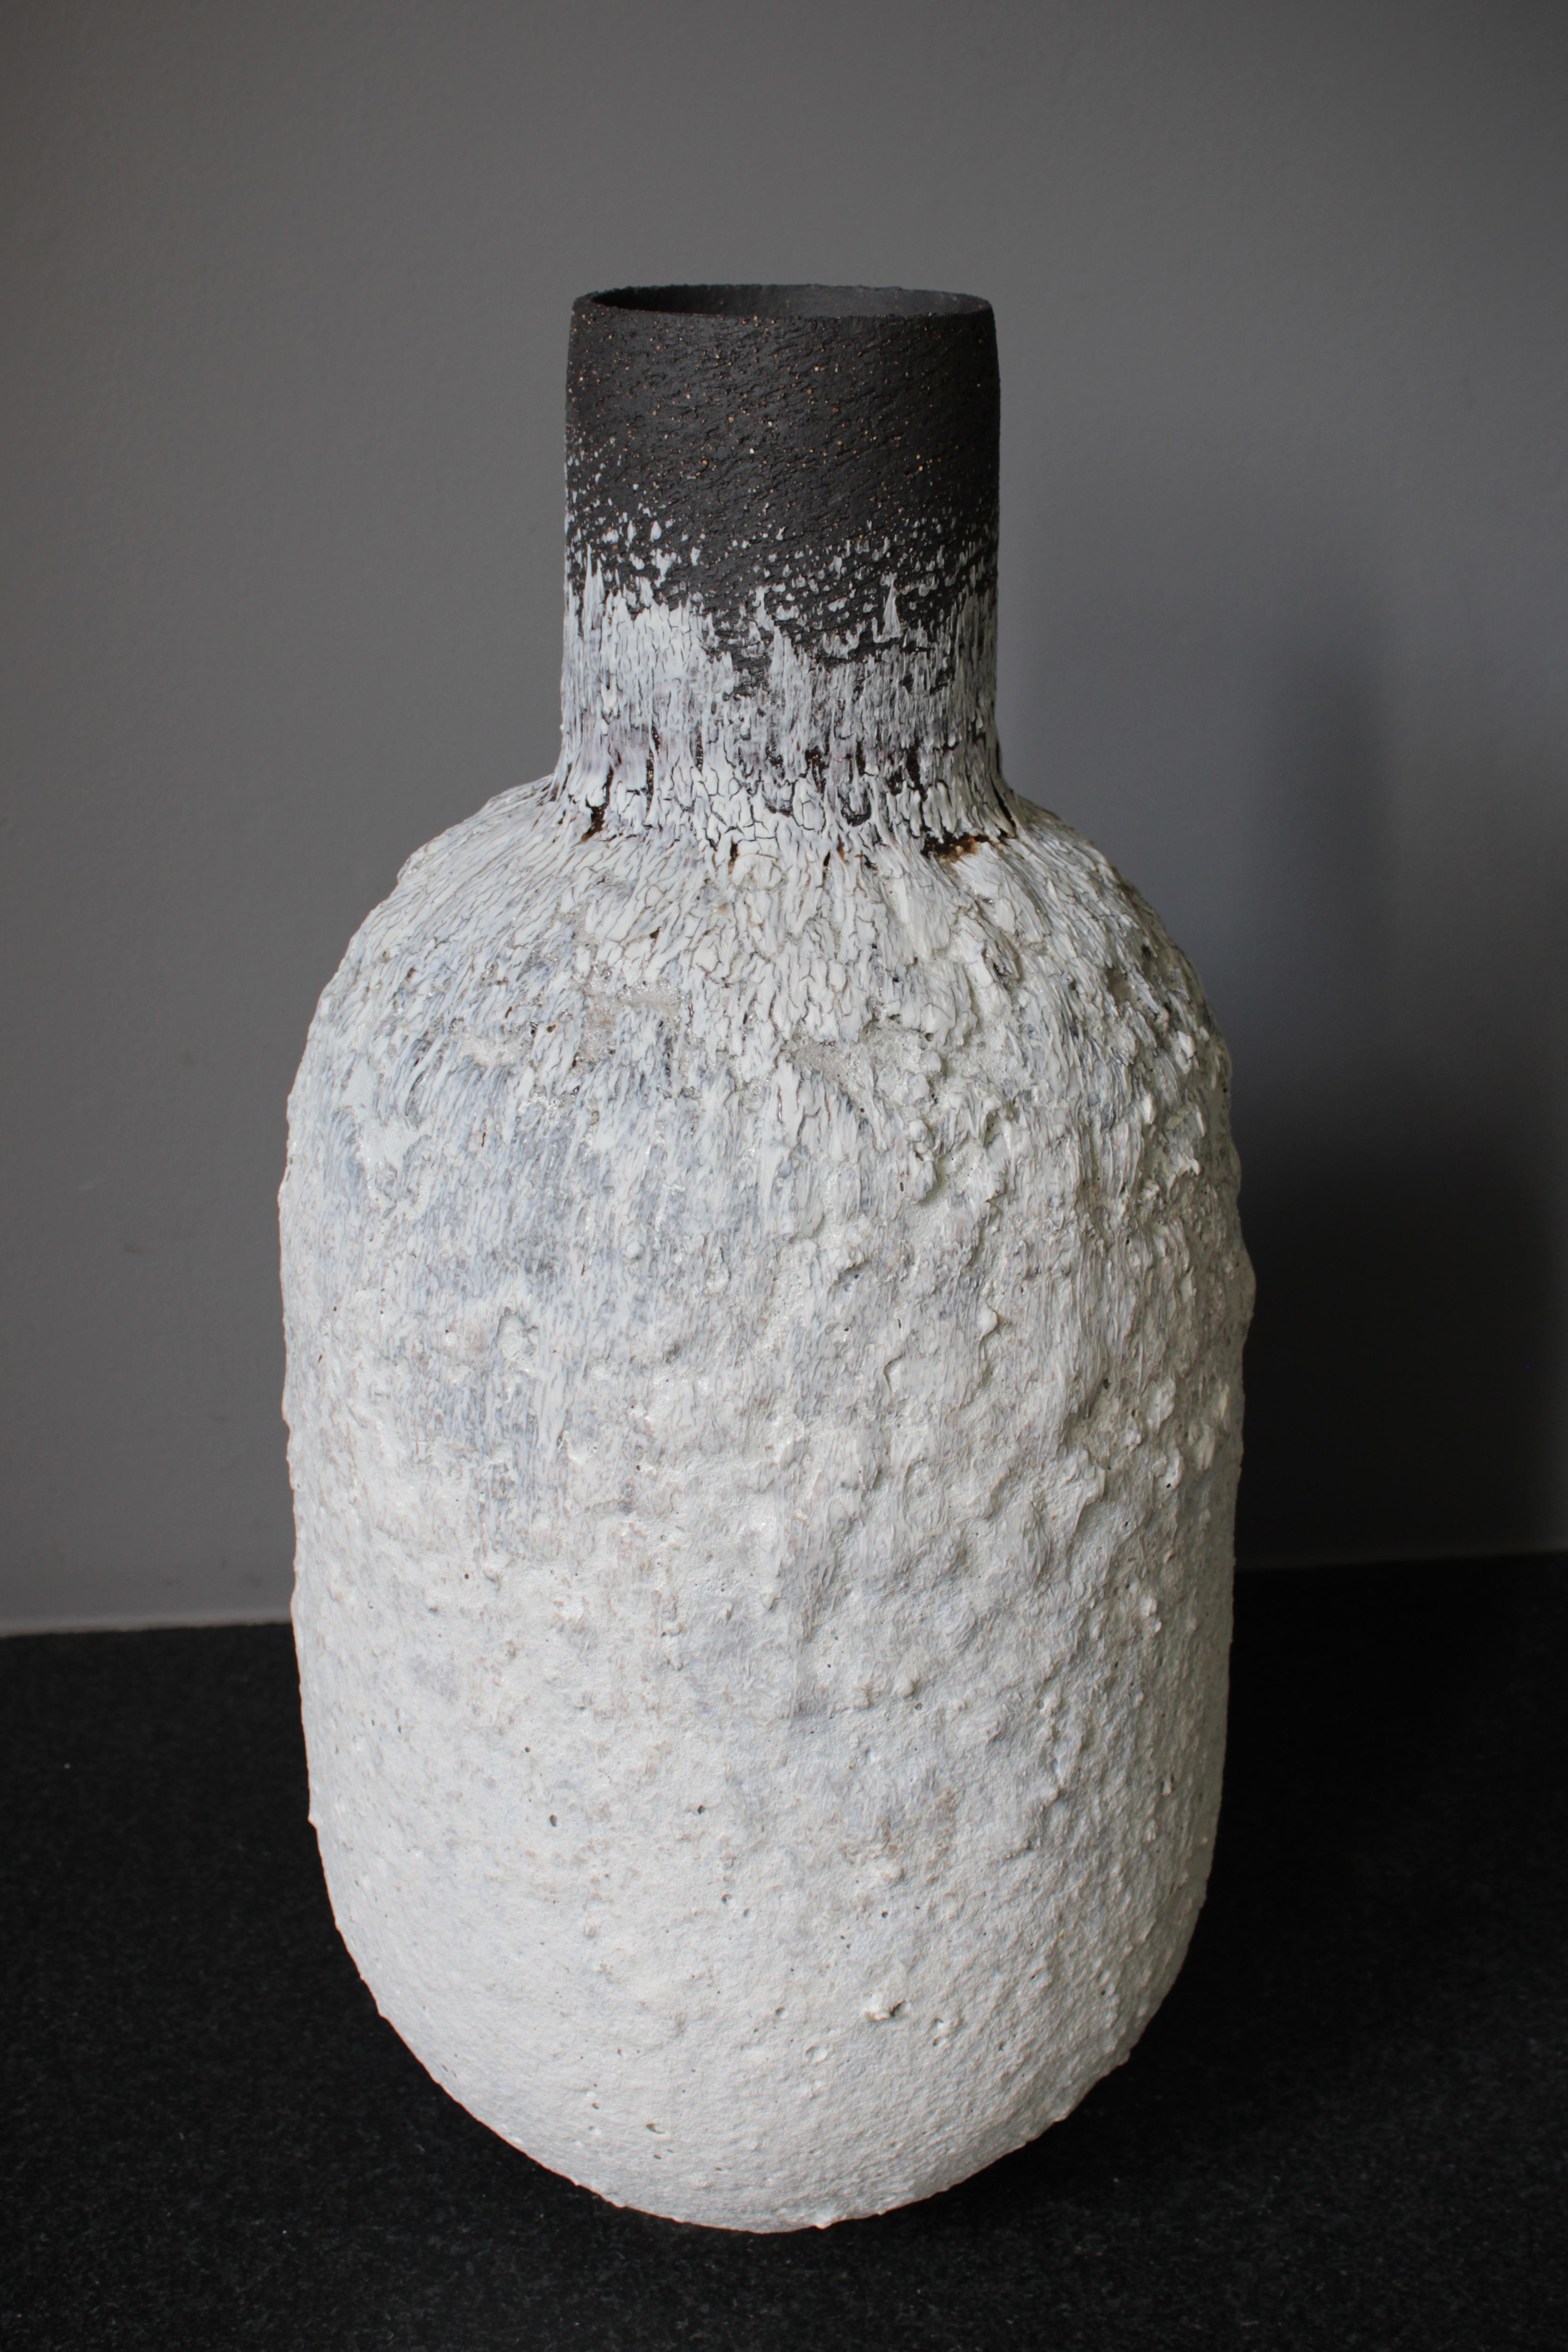 Grand récipient en forme de bouteille en grès blanc et noir et en porcelaine avec une glaçure à texture volcanique.

L'œuvre est construite à la main en utilisant une combinaison d'argiles noires et chamoisées en grès, des engobes volcaniques sont